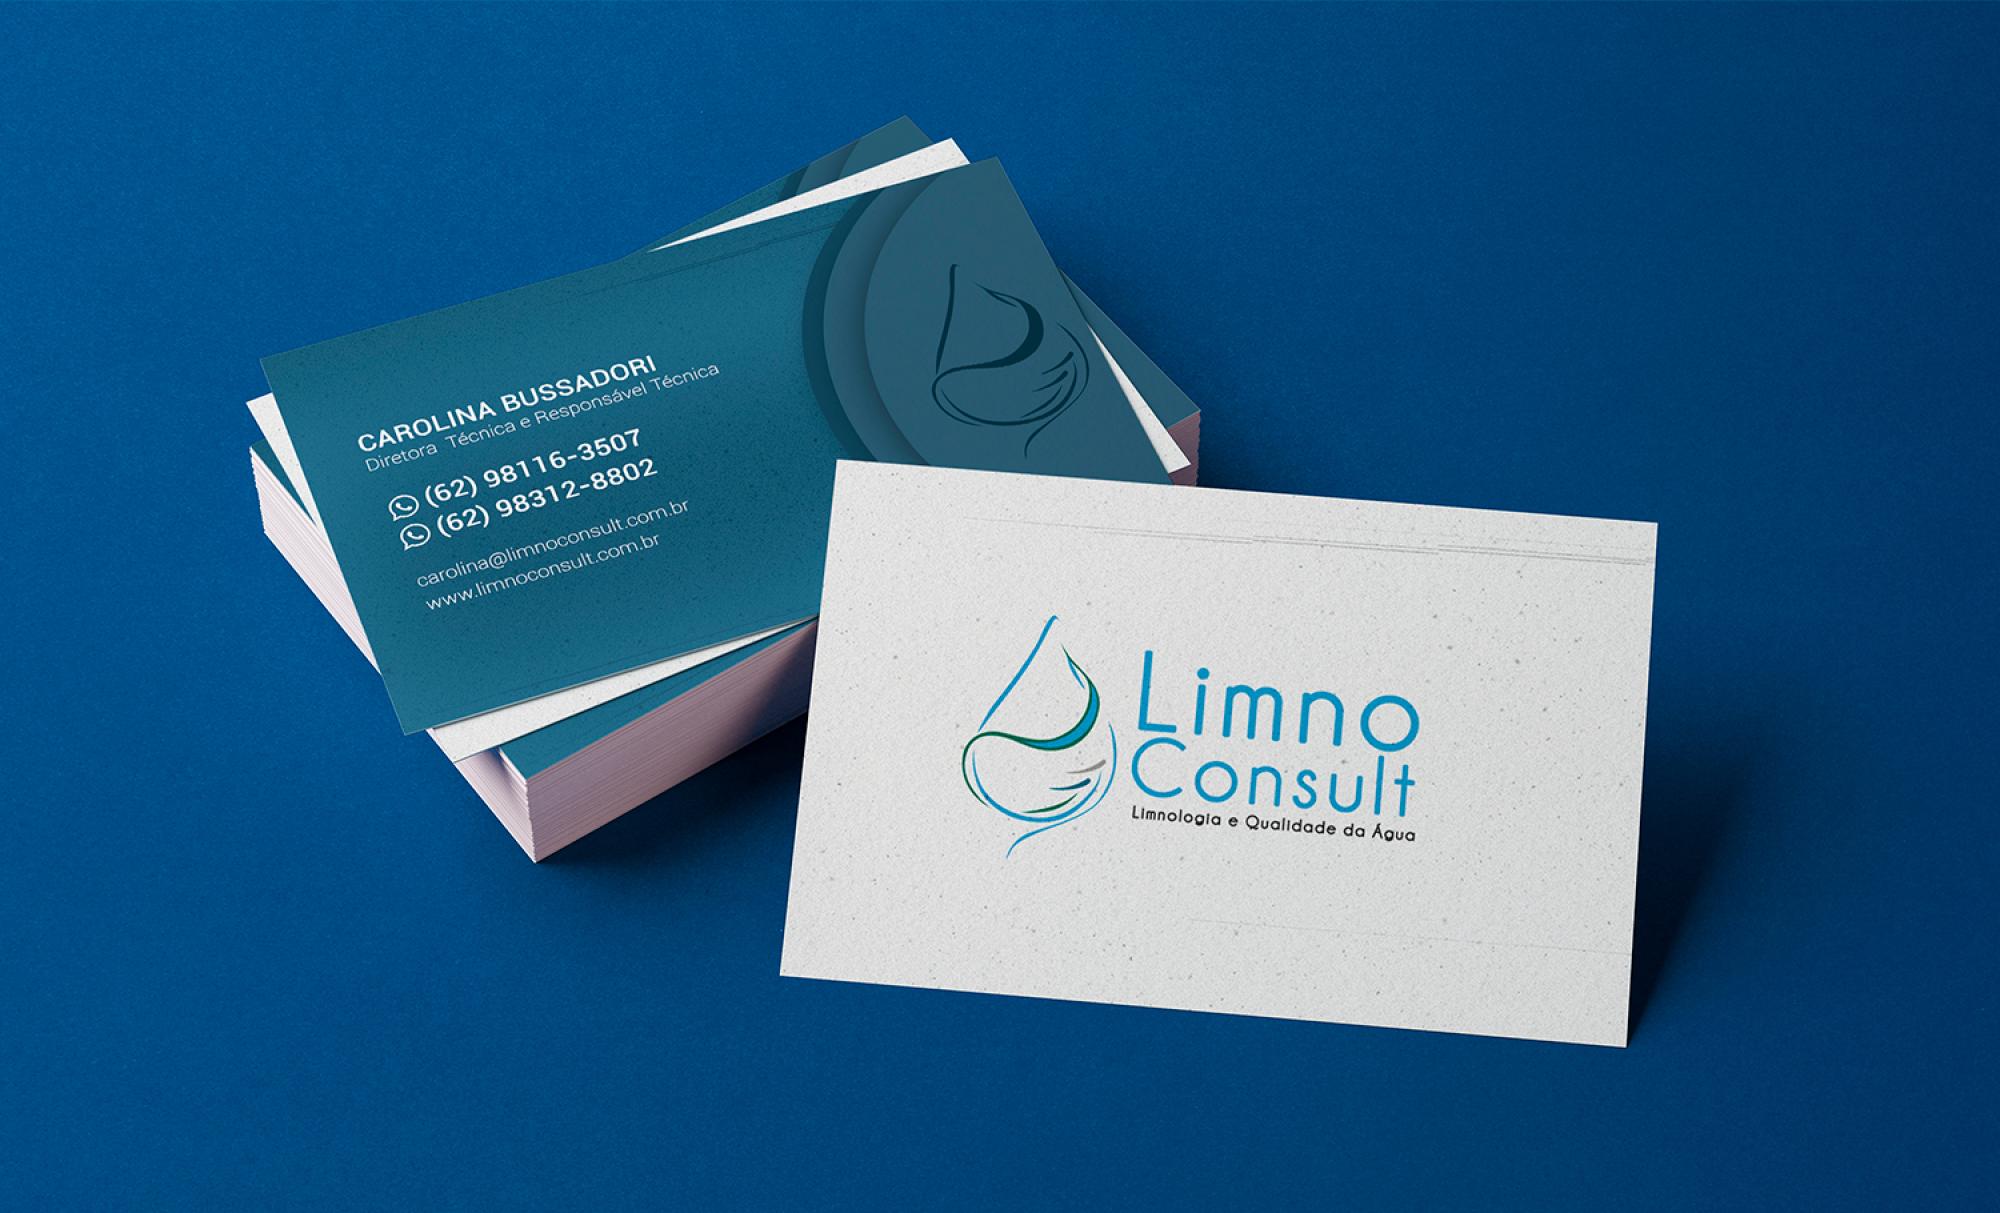 Limno Consult - Cliente AsWEb